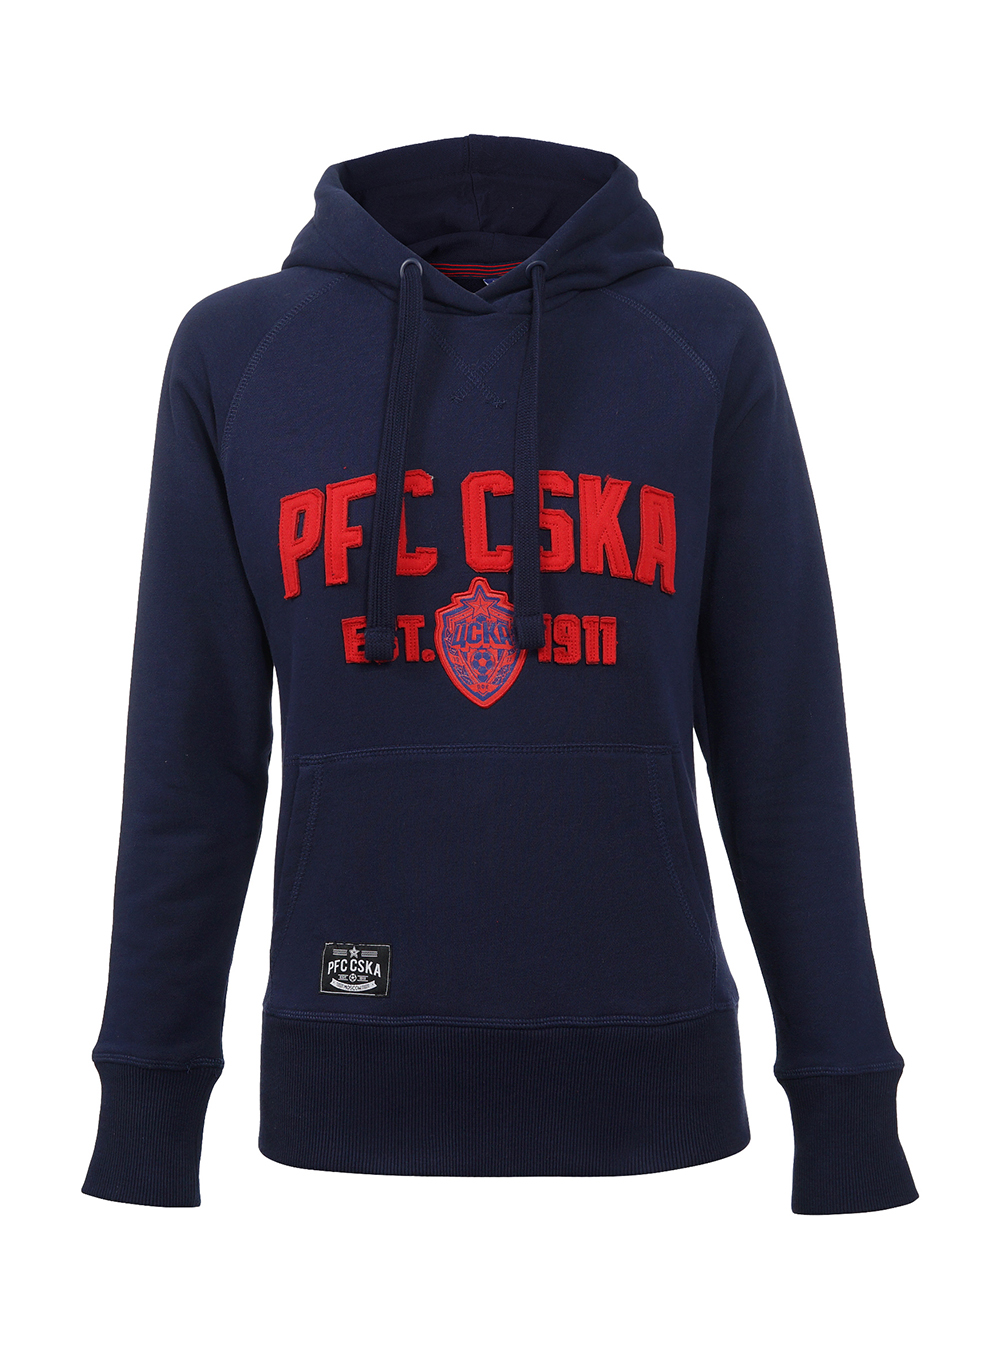 Толстовка женская "PFC CSKA est.1911", цвет синий (M) от Cskashop